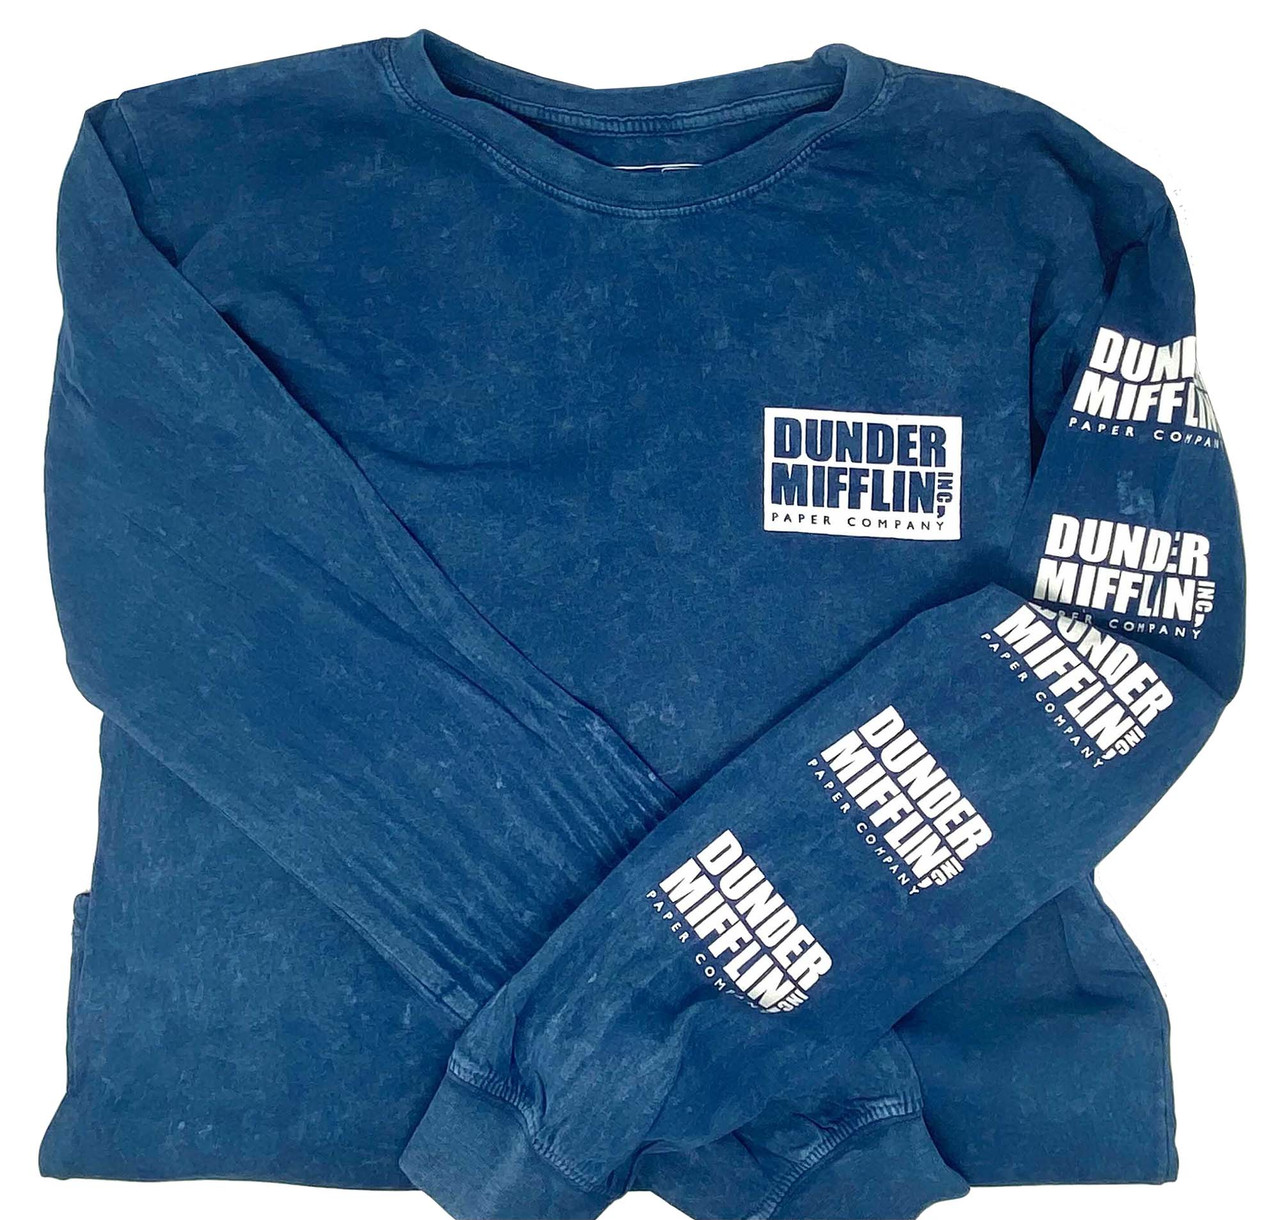 The Office Dunder Mifflin Official Short Sleeve T-Shirt